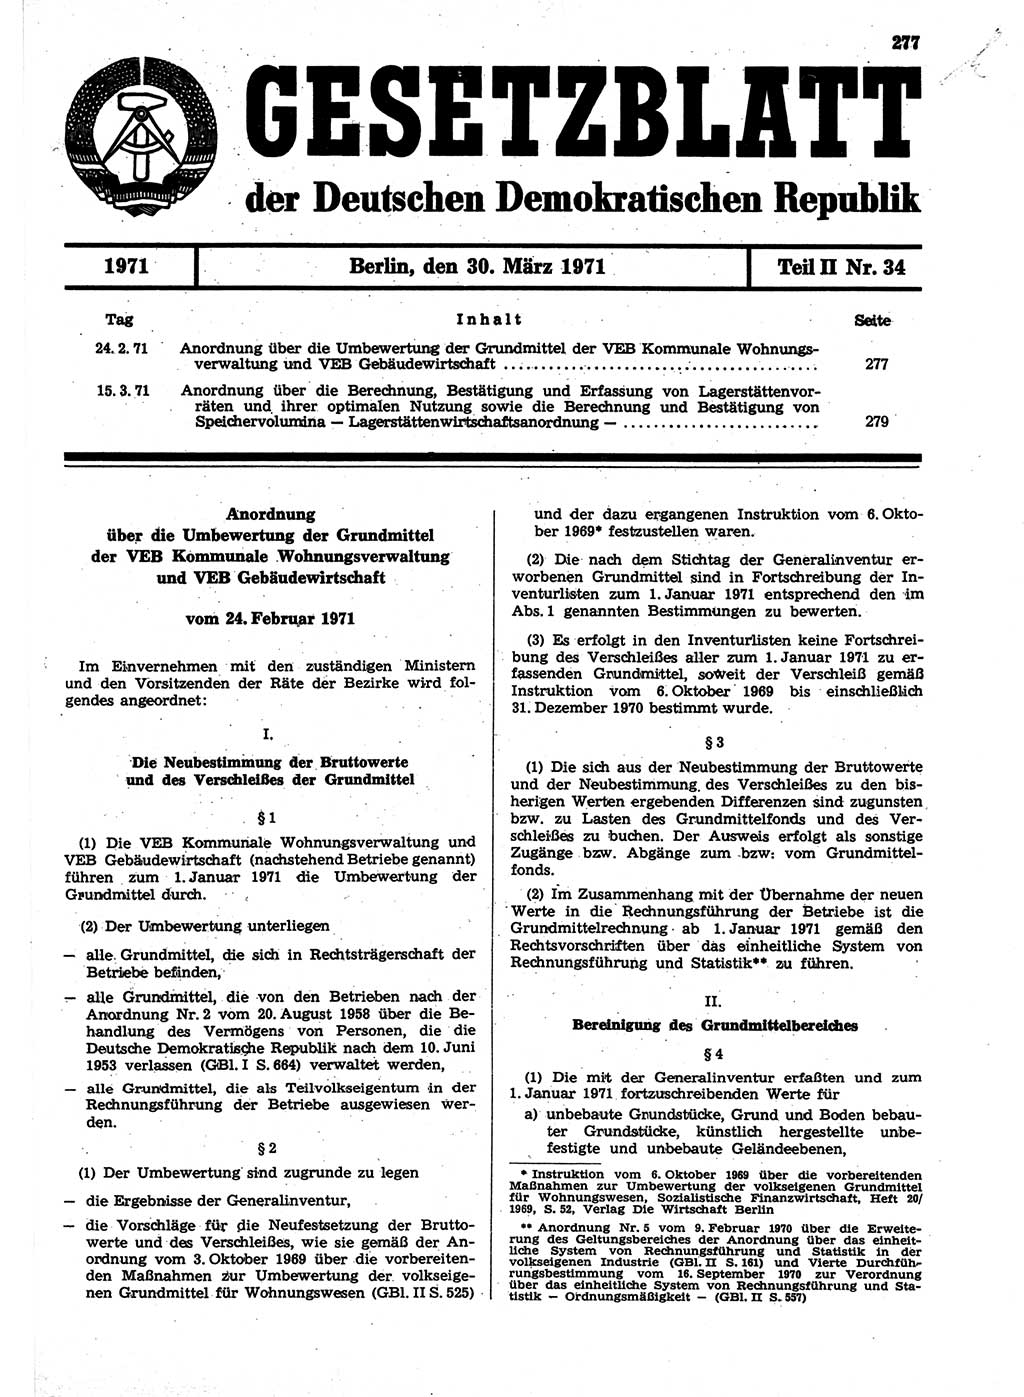 Gesetzblatt (GBl.) der Deutschen Demokratischen Republik (DDR) Teil ⅠⅠ 1971, Seite 277 (GBl. DDR ⅠⅠ 1971, S. 277)